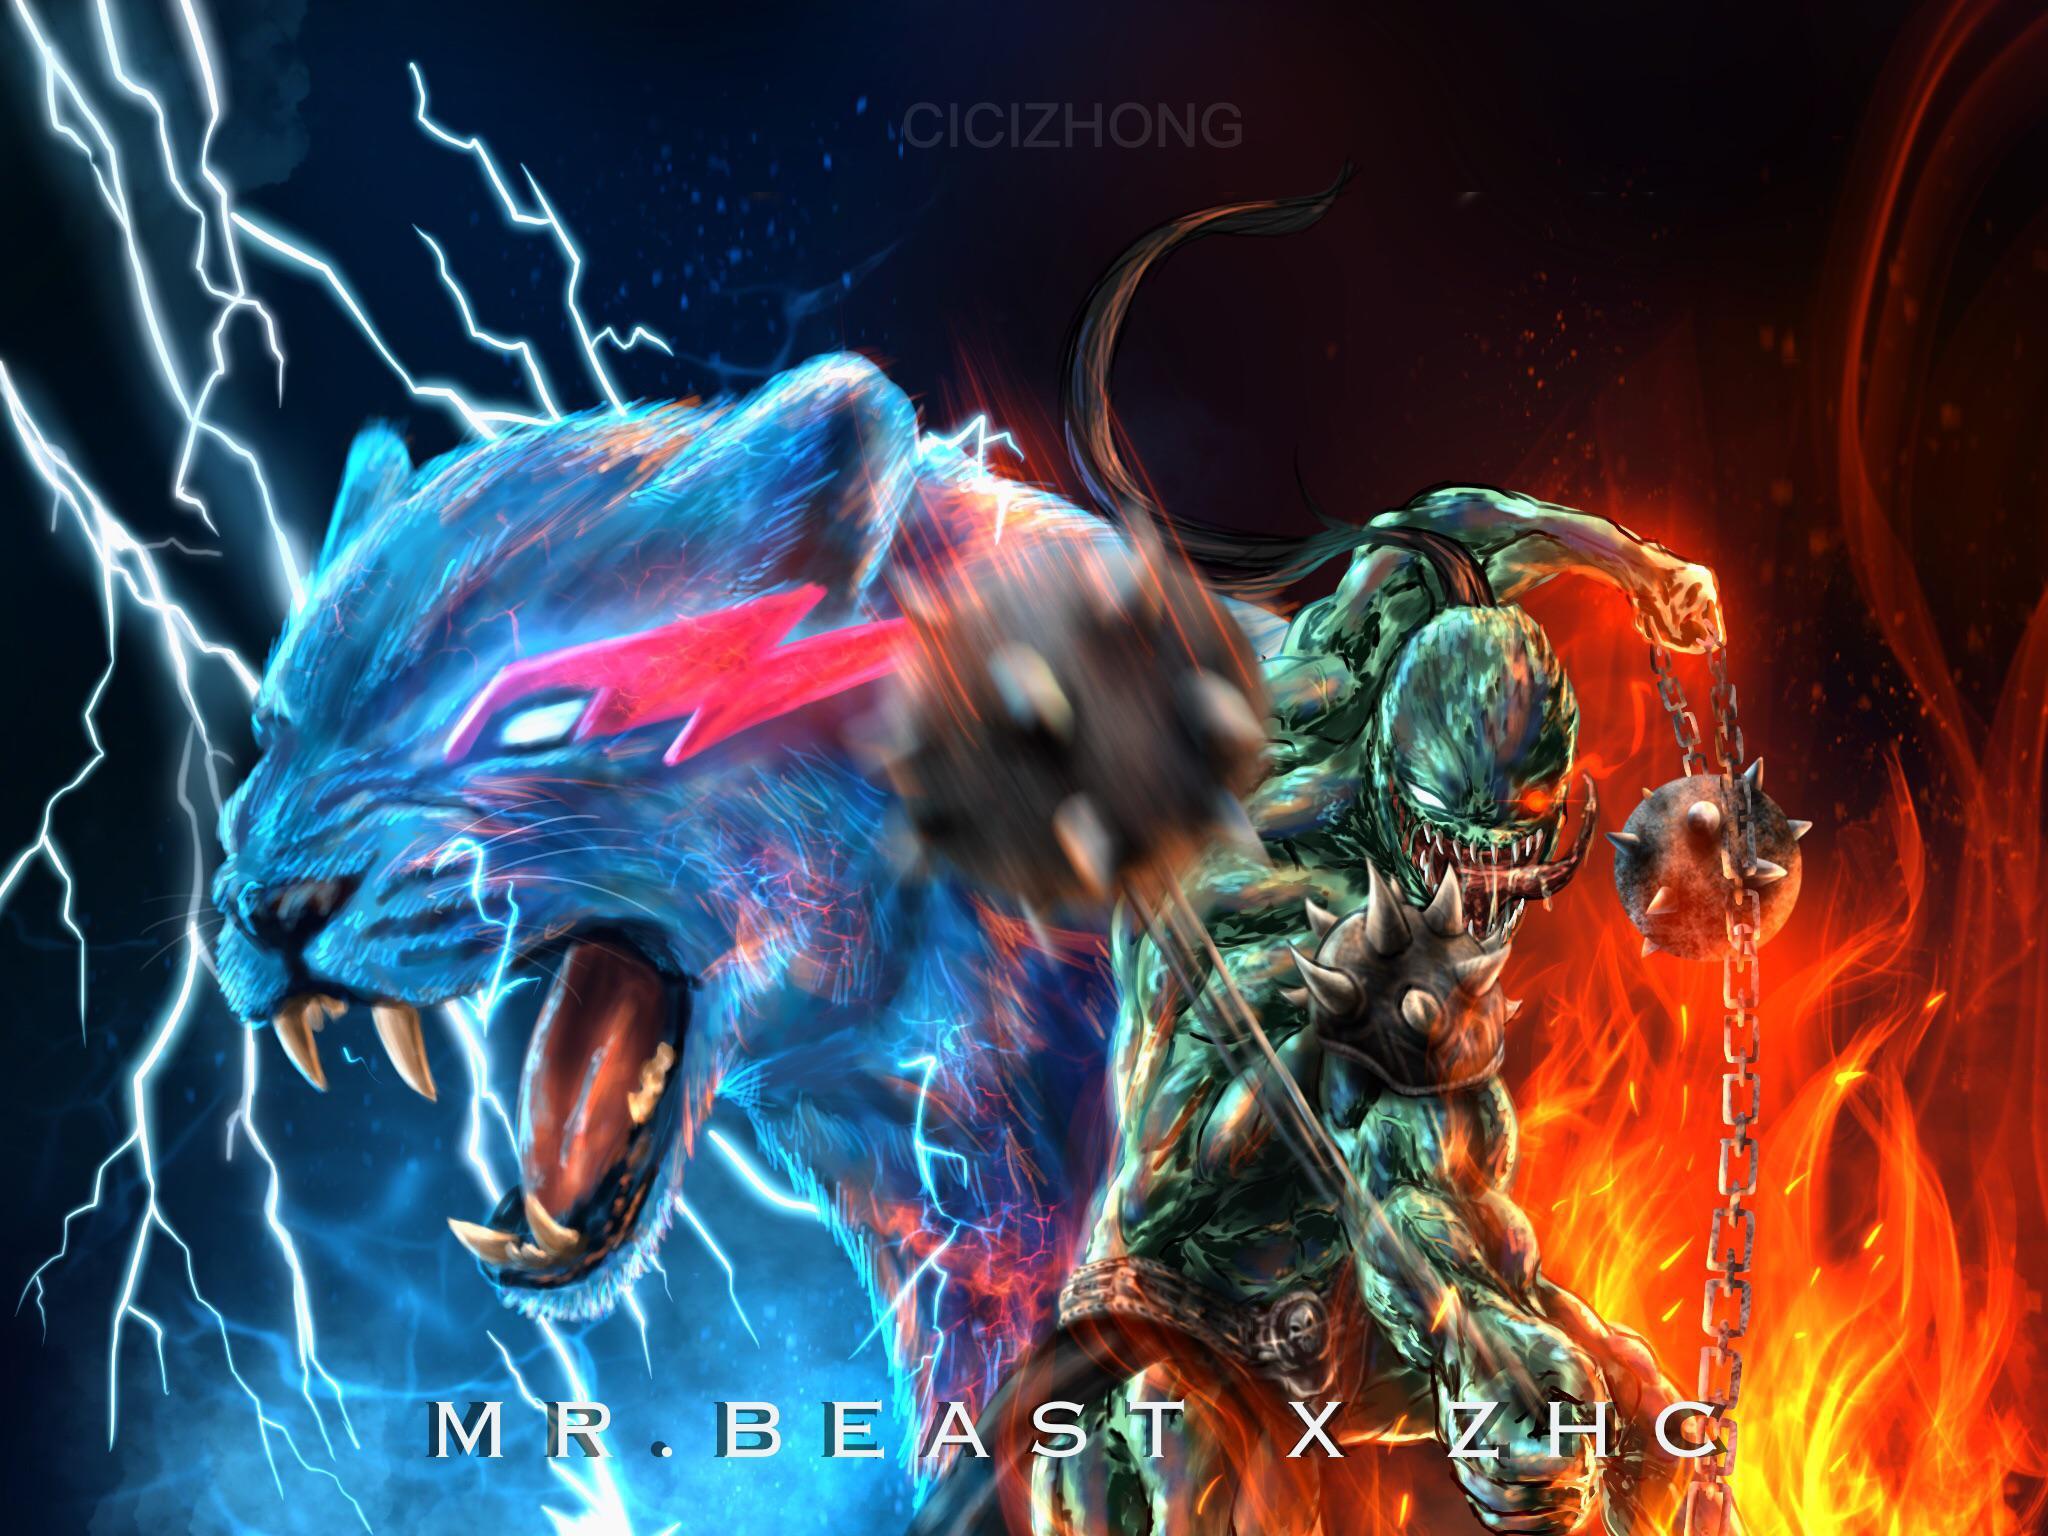 Mr.beast X ZHC,will it happen? 